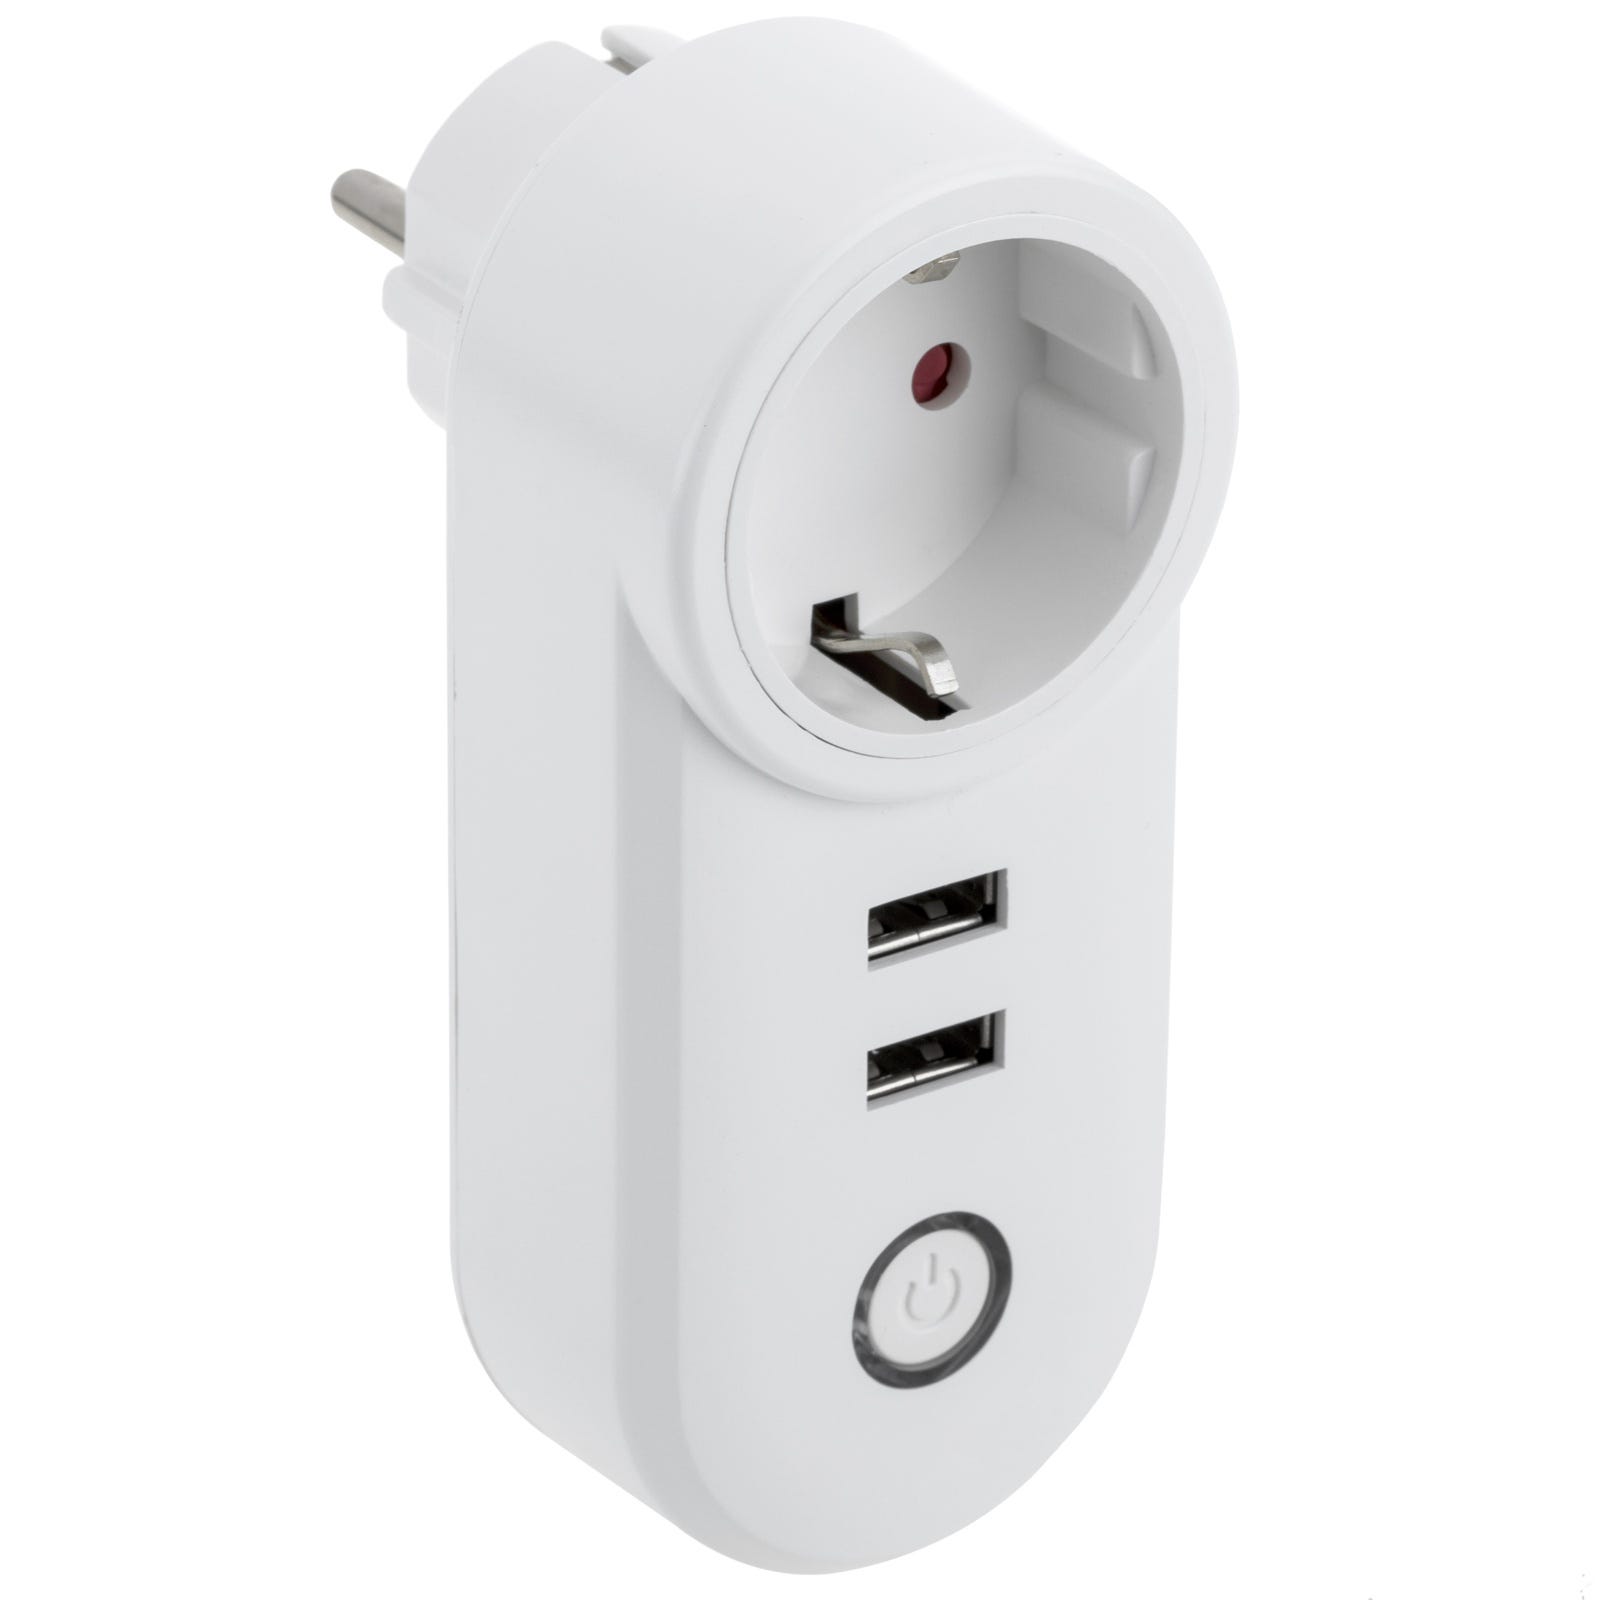 Smart Plug telecomando compatibile con Google Home, Alexa e IFTTT